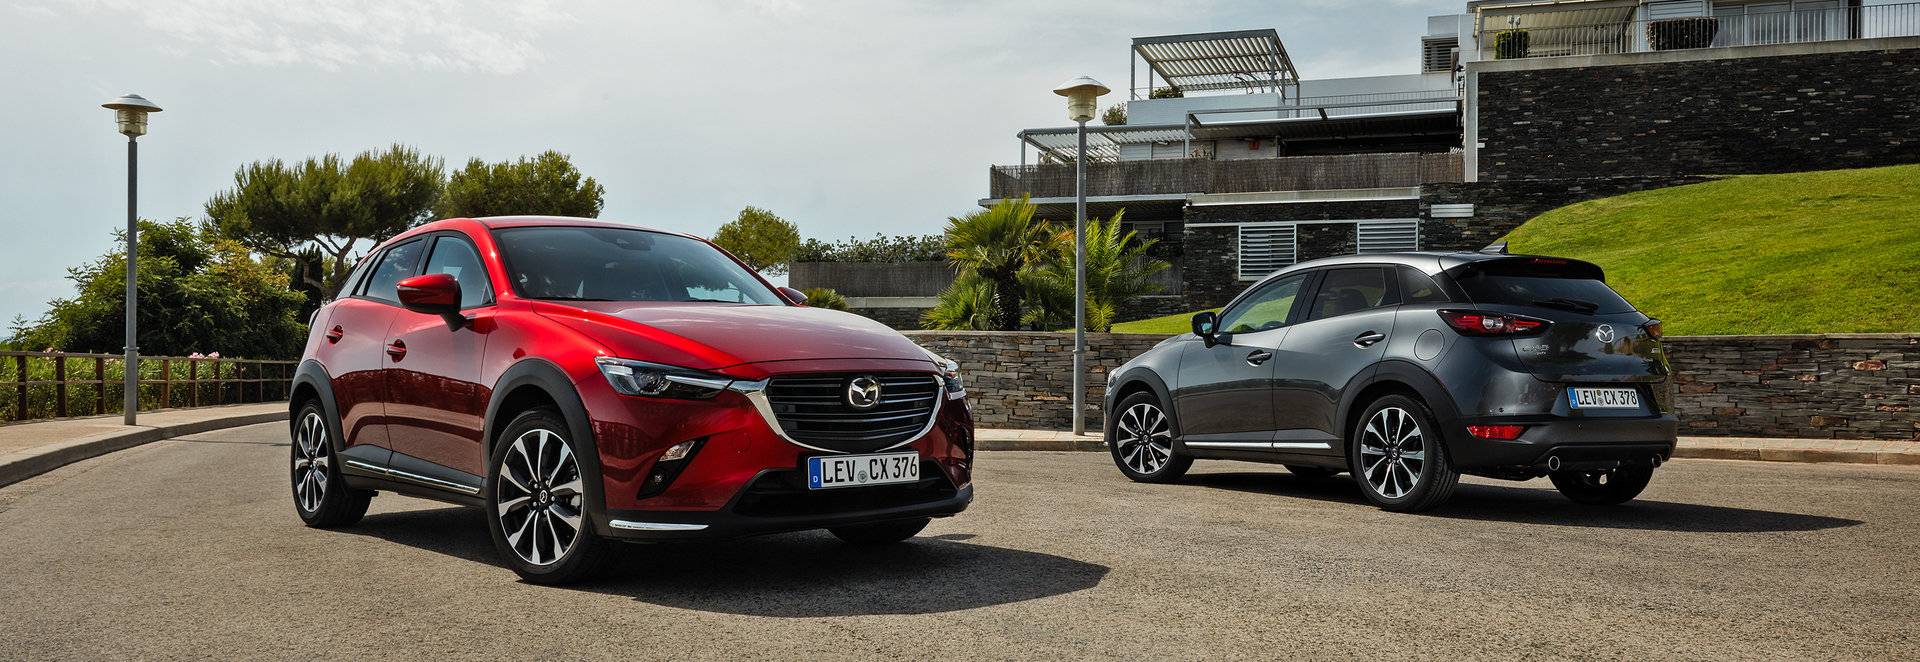 El Mazda CX-3 2018 ya está a la venta, desde 20.645 euros